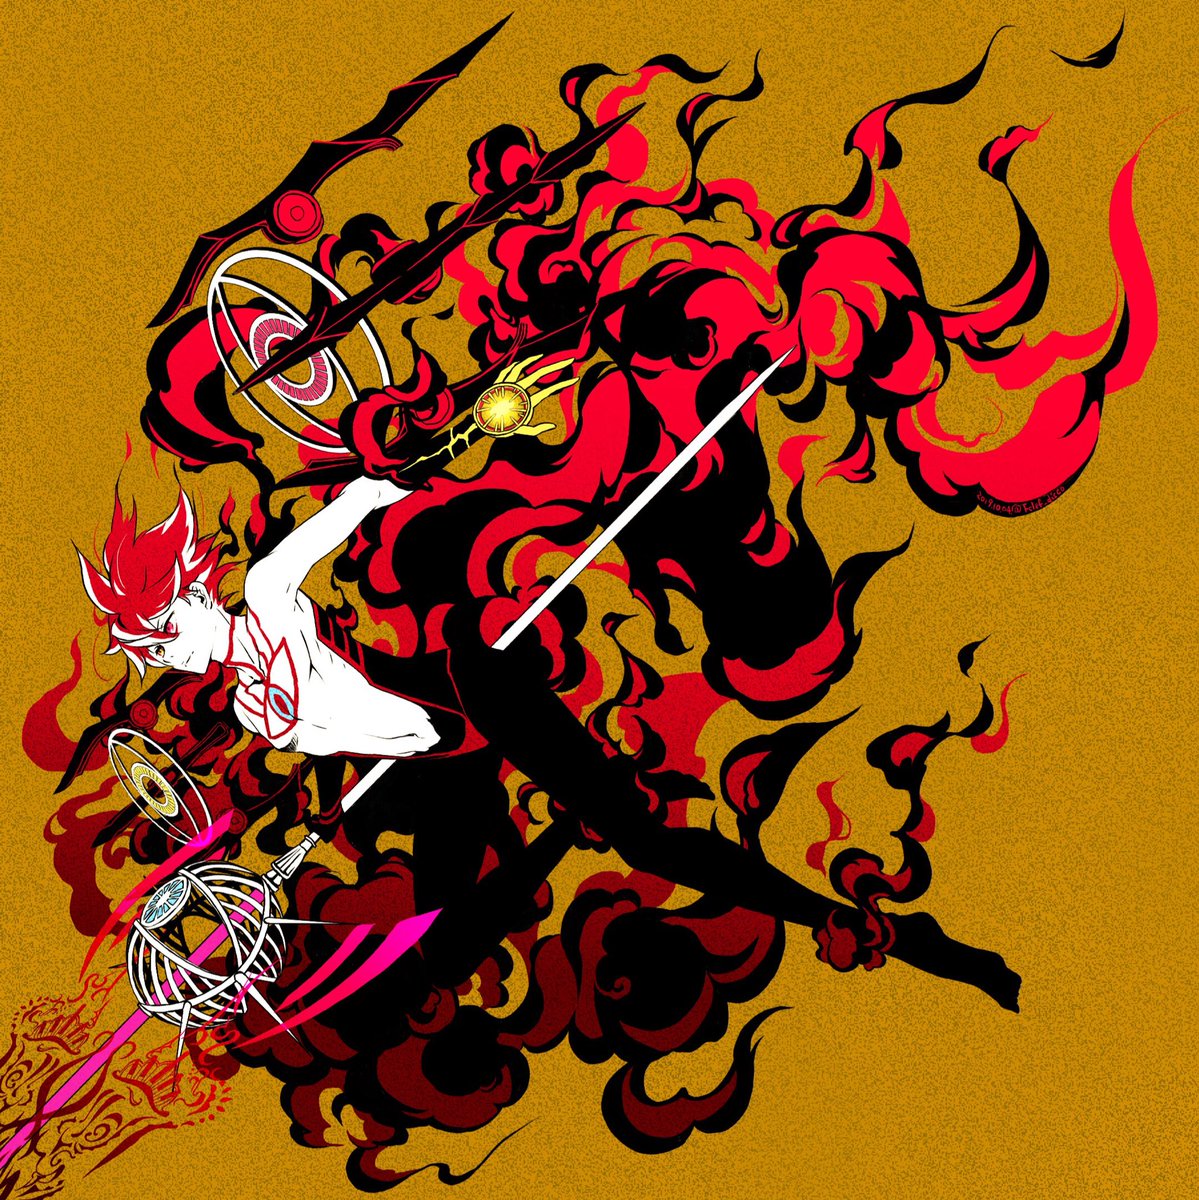 Fgo 炎熱をその身に纏い Fate Grandorder スーパーカルナさん 塩のイラスト